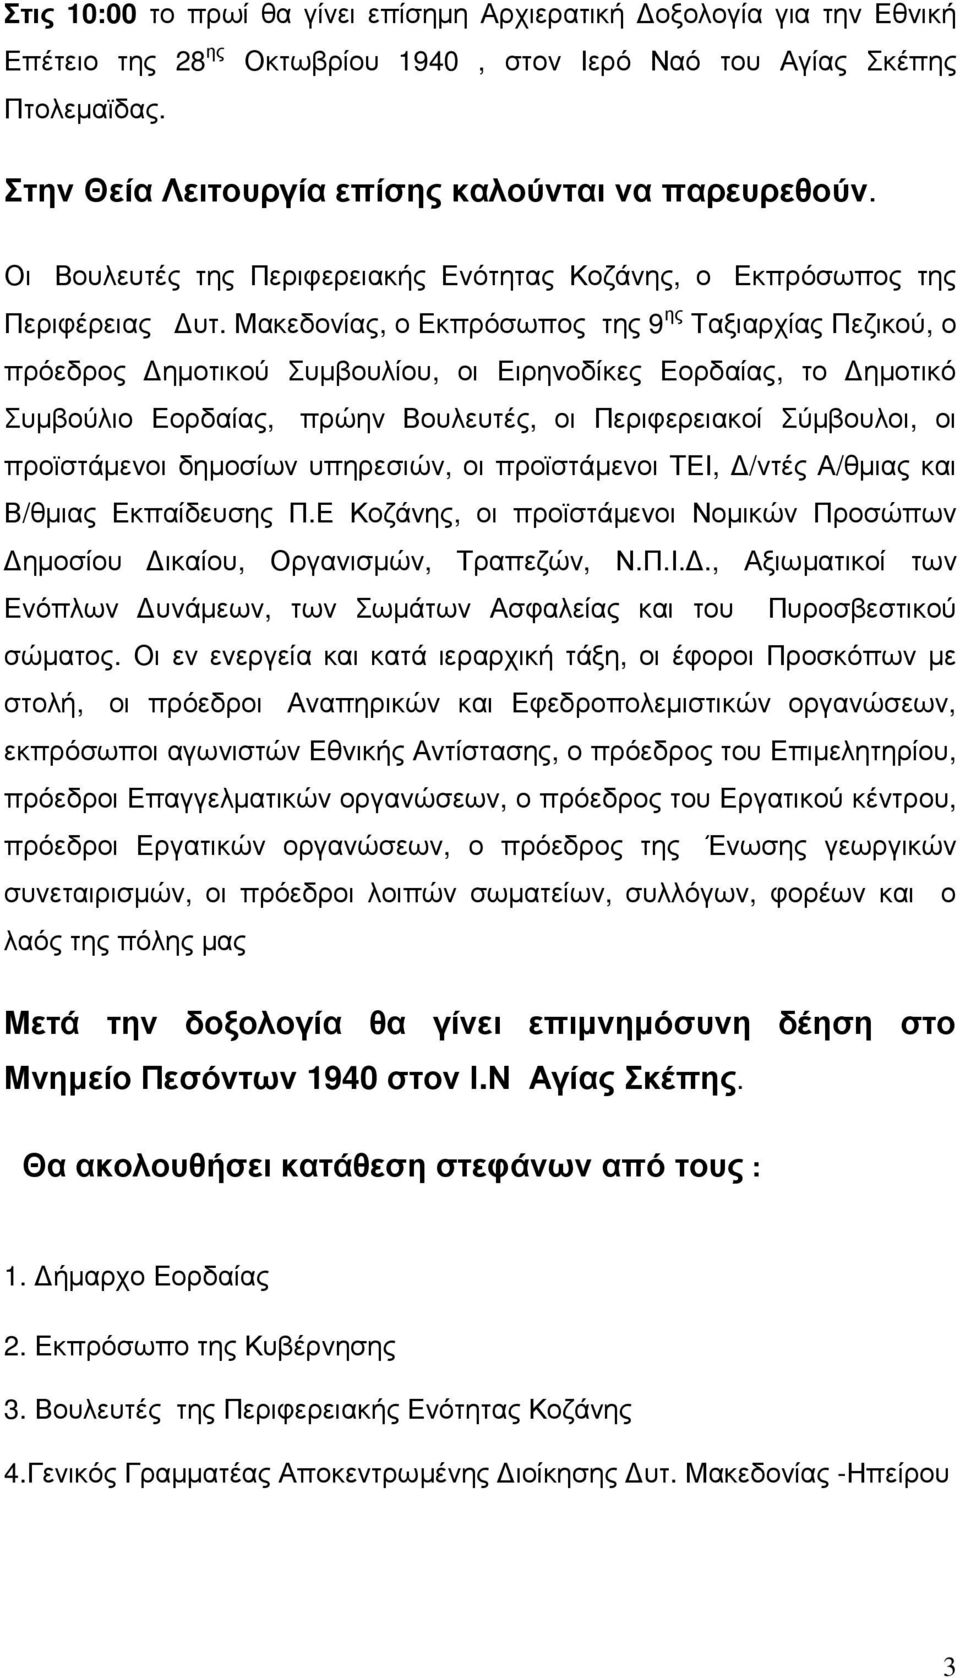 Μακεδονίας, ο Εκπρόσωπος της 9 ης Ταξιαρχίας Πεζικού, ο πρόεδρος ηµοτικού Συµβουλίου, οι Ειρηνοδίκες Εορδαίας, το ηµοτικό Συµβούλιο Εορδαίας, πρώην Βουλευτές, οι Περιφερειακοί Σύµβουλοι, οι